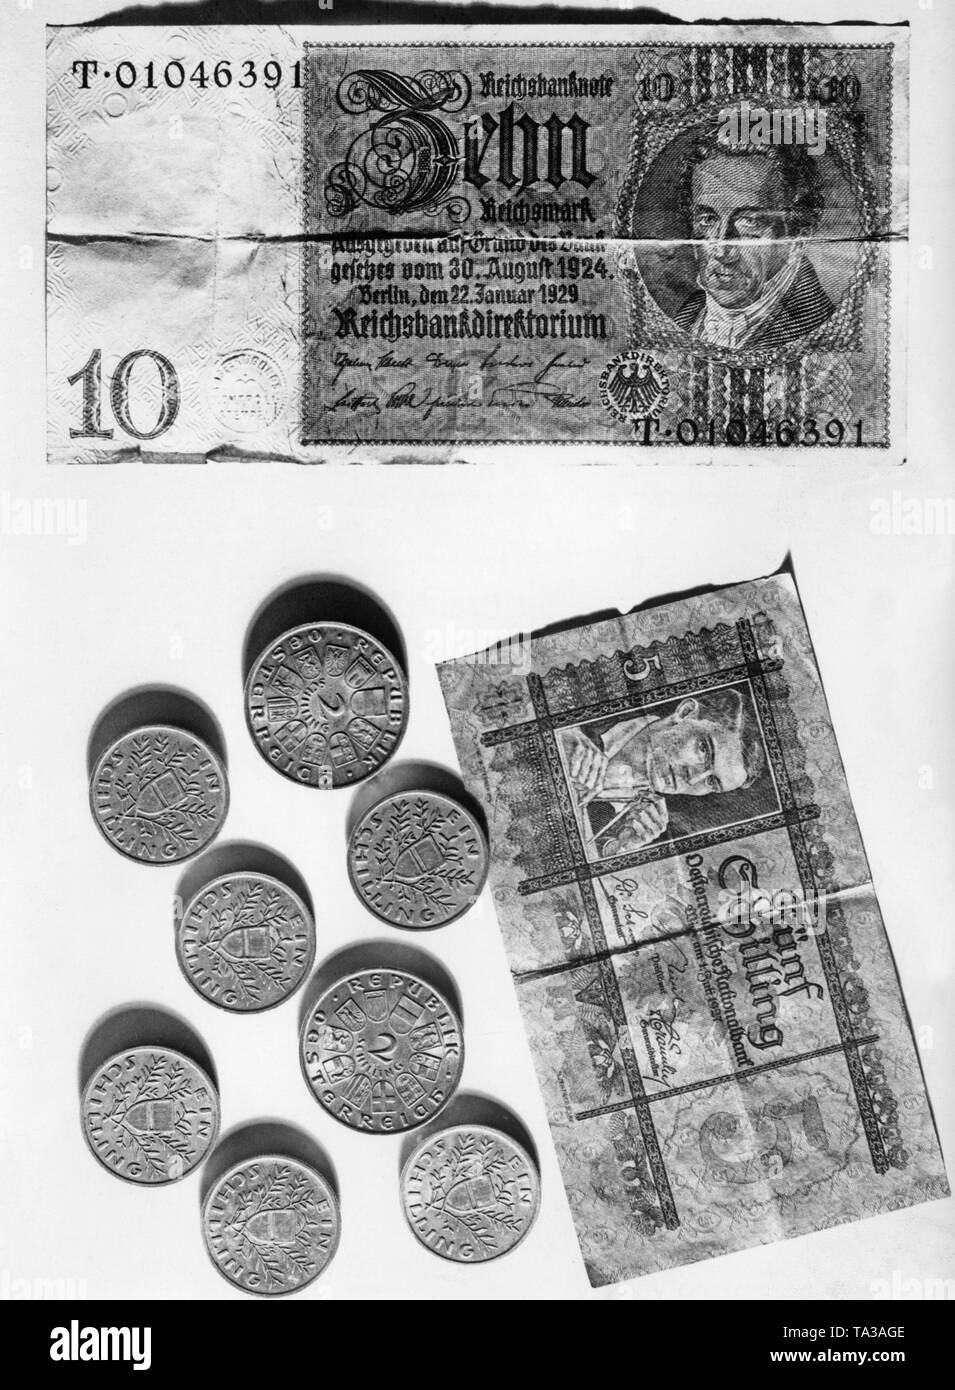 Après l'annexion de l'Autriche à l'Empire allemand, la réforme monétaire est en cours en Autriche. Le shilling est changé en Reichsmark au taux de 2:3. Banque D'Images